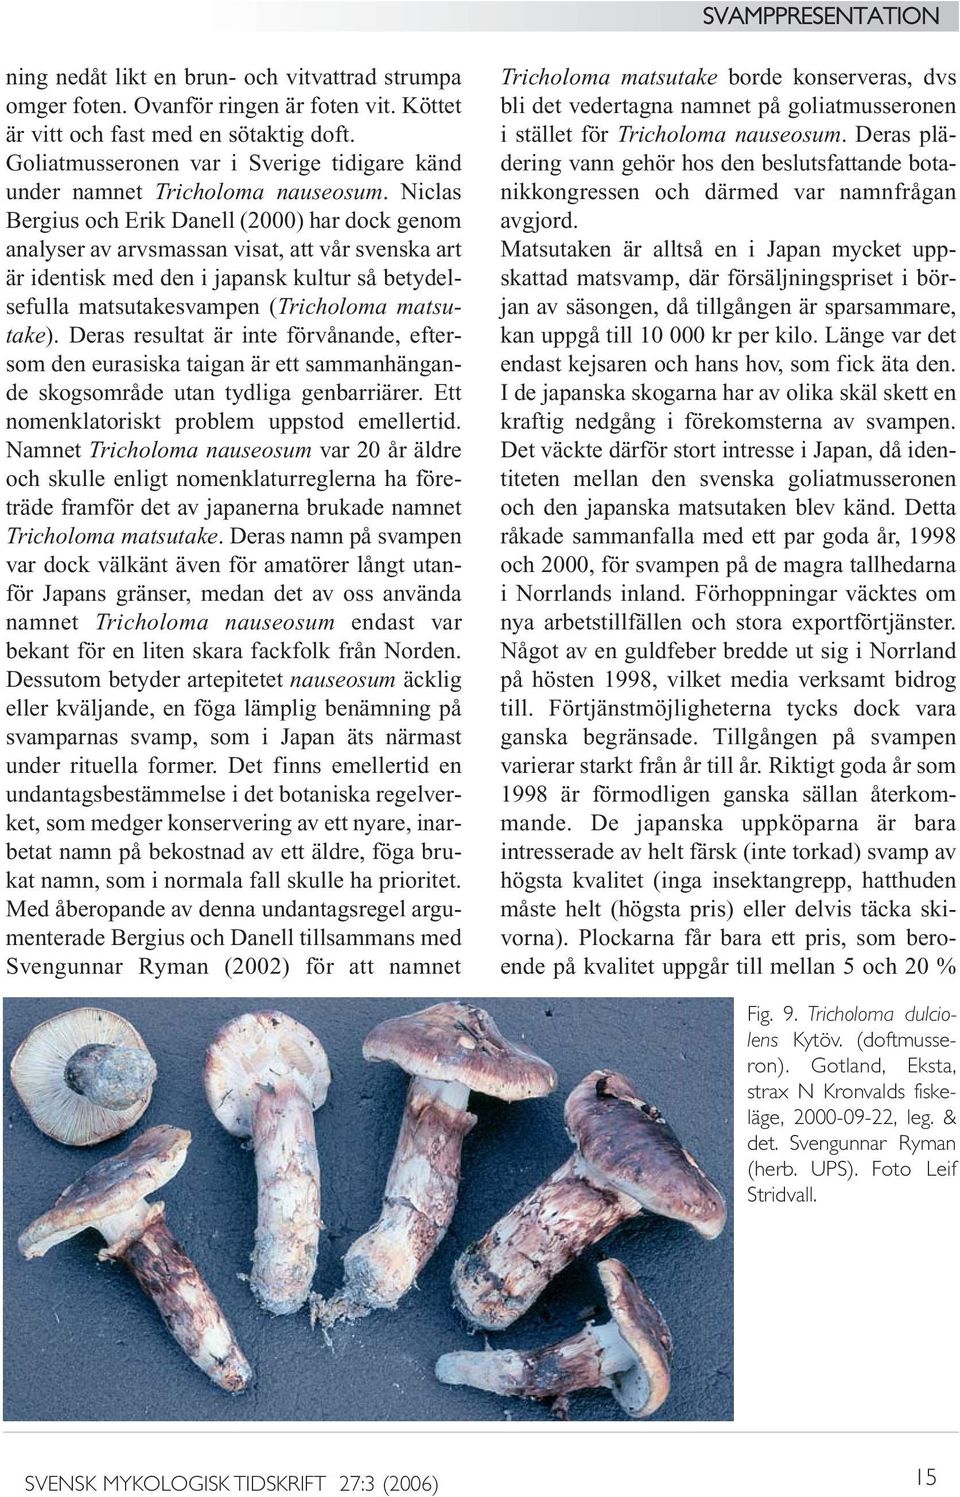 Niclas Bergius och Erik Danell (2000) har dock genom analyser av arvsmassan visat, att vår svenska art är identisk med den i japansk kultur så betydelsefulla matsutakesvampen (Tricholoma matsutake).